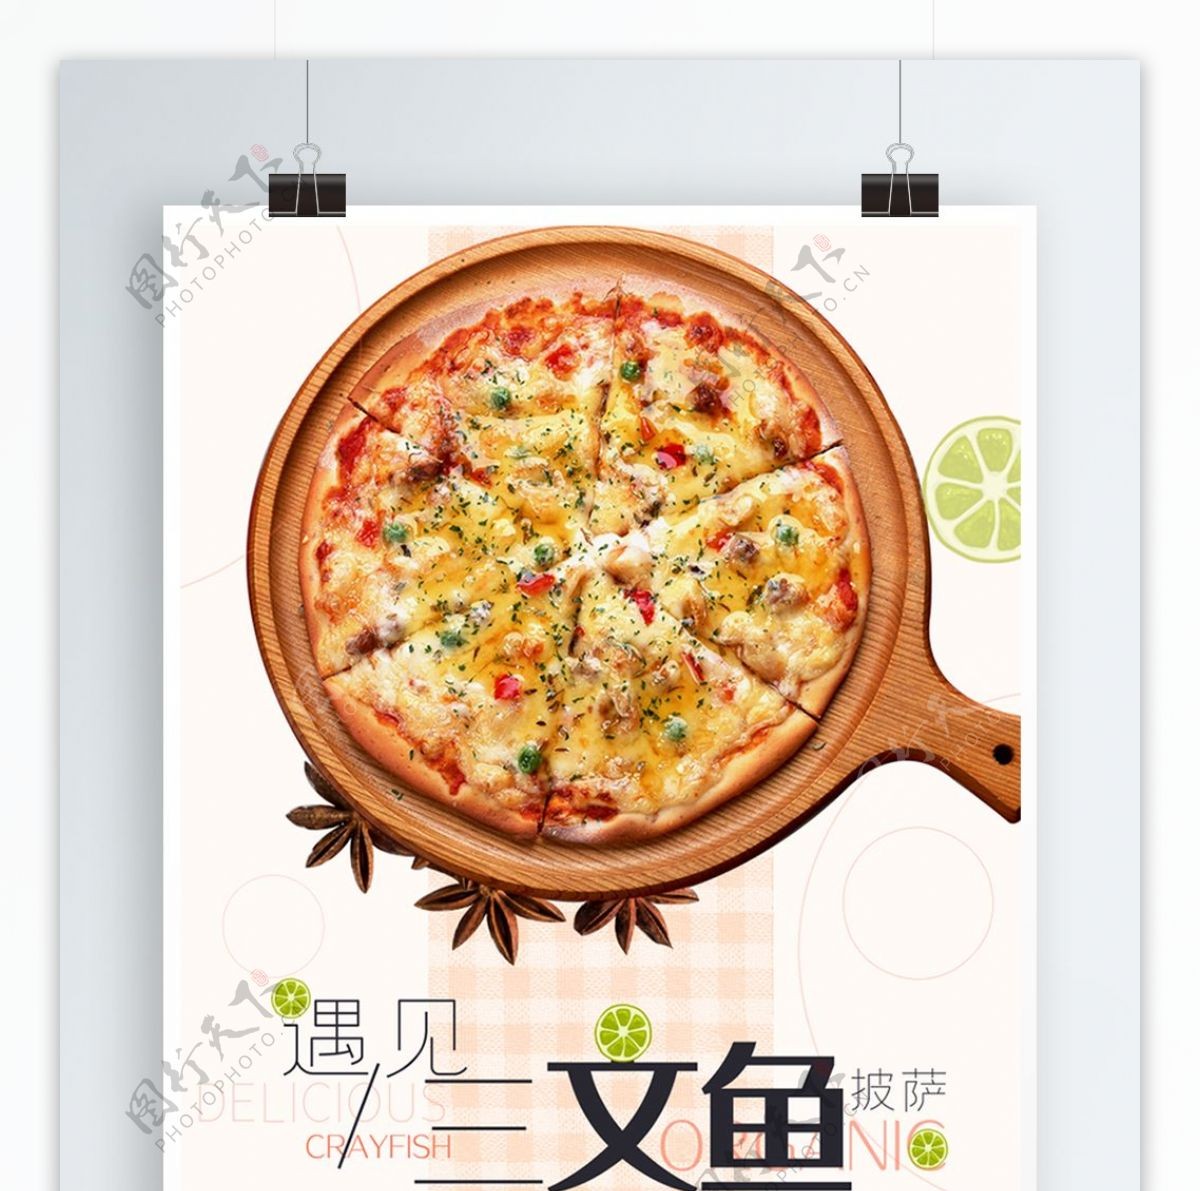 小清新三文鱼披萨食品促销海报